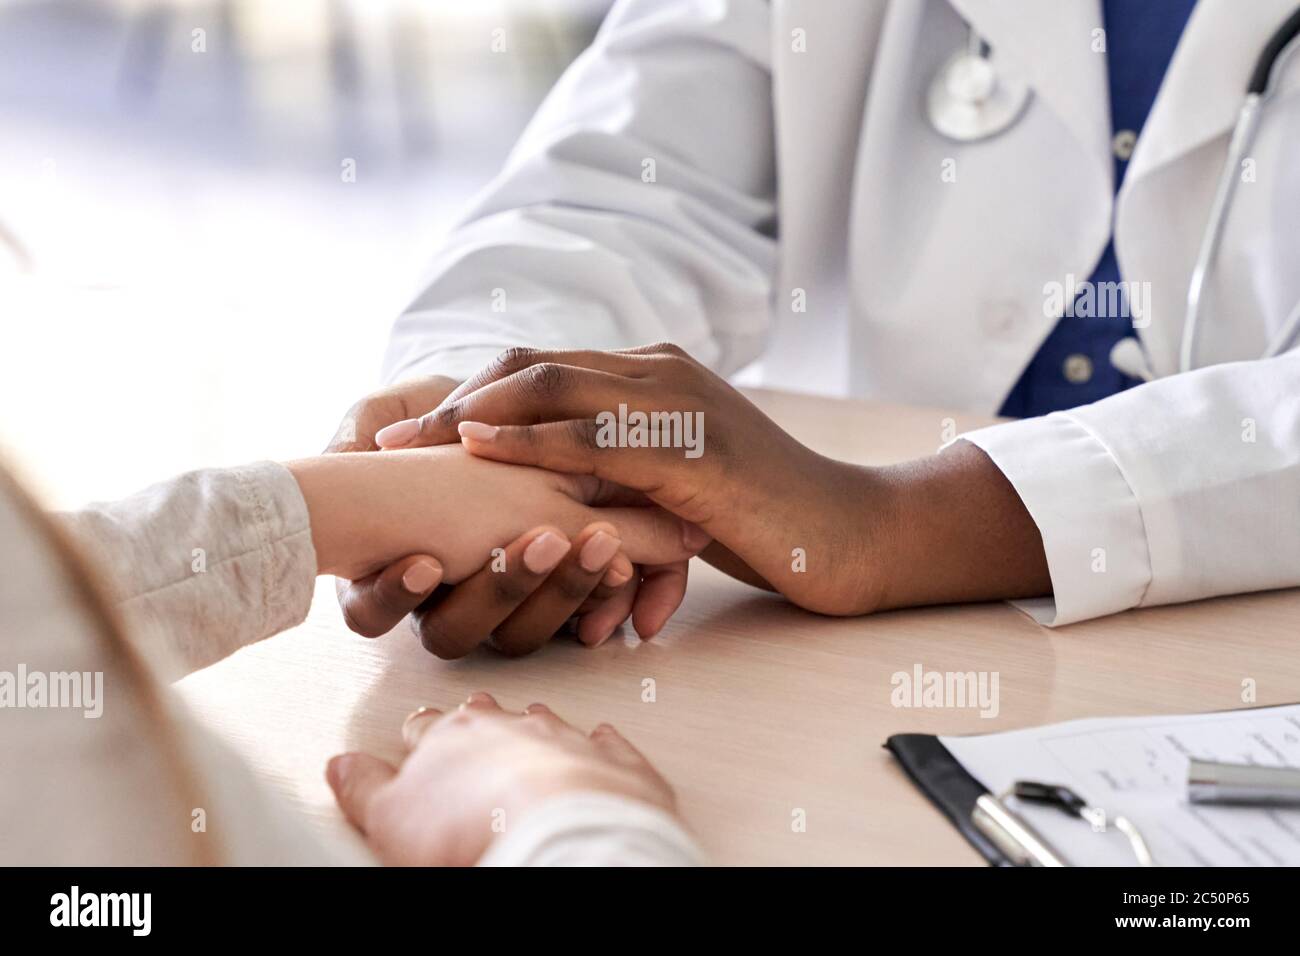 Un médecin africain tient la main d'un patient caucasien pour lui donner du confort, de la compassion, un gros plan. Banque D'Images